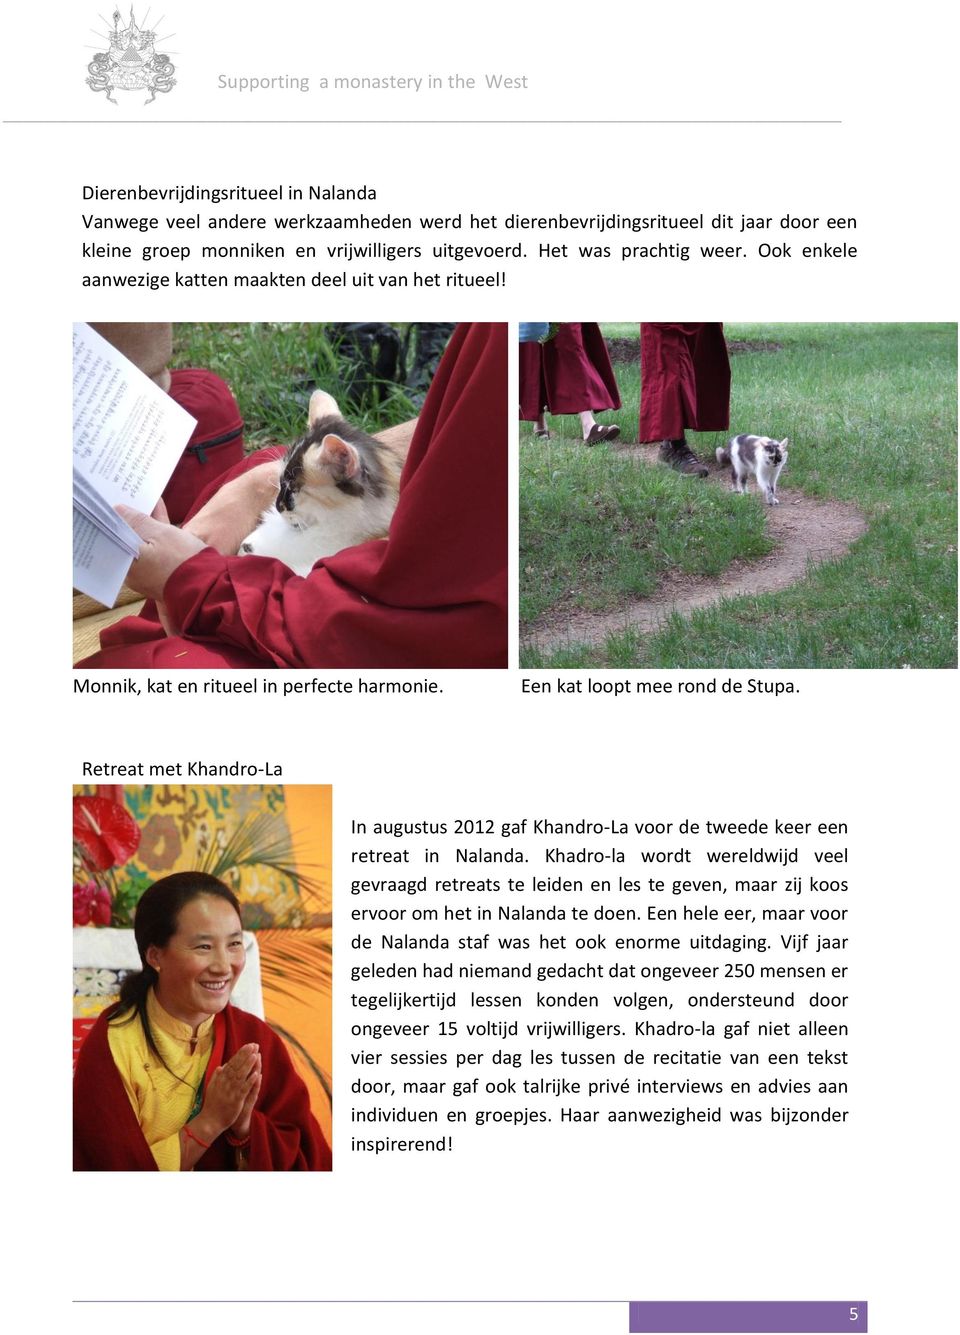 Retreat met Khandro-La In augustus 2012 gaf Khandro-La voor de tweede keer een retreat in Nalanda.